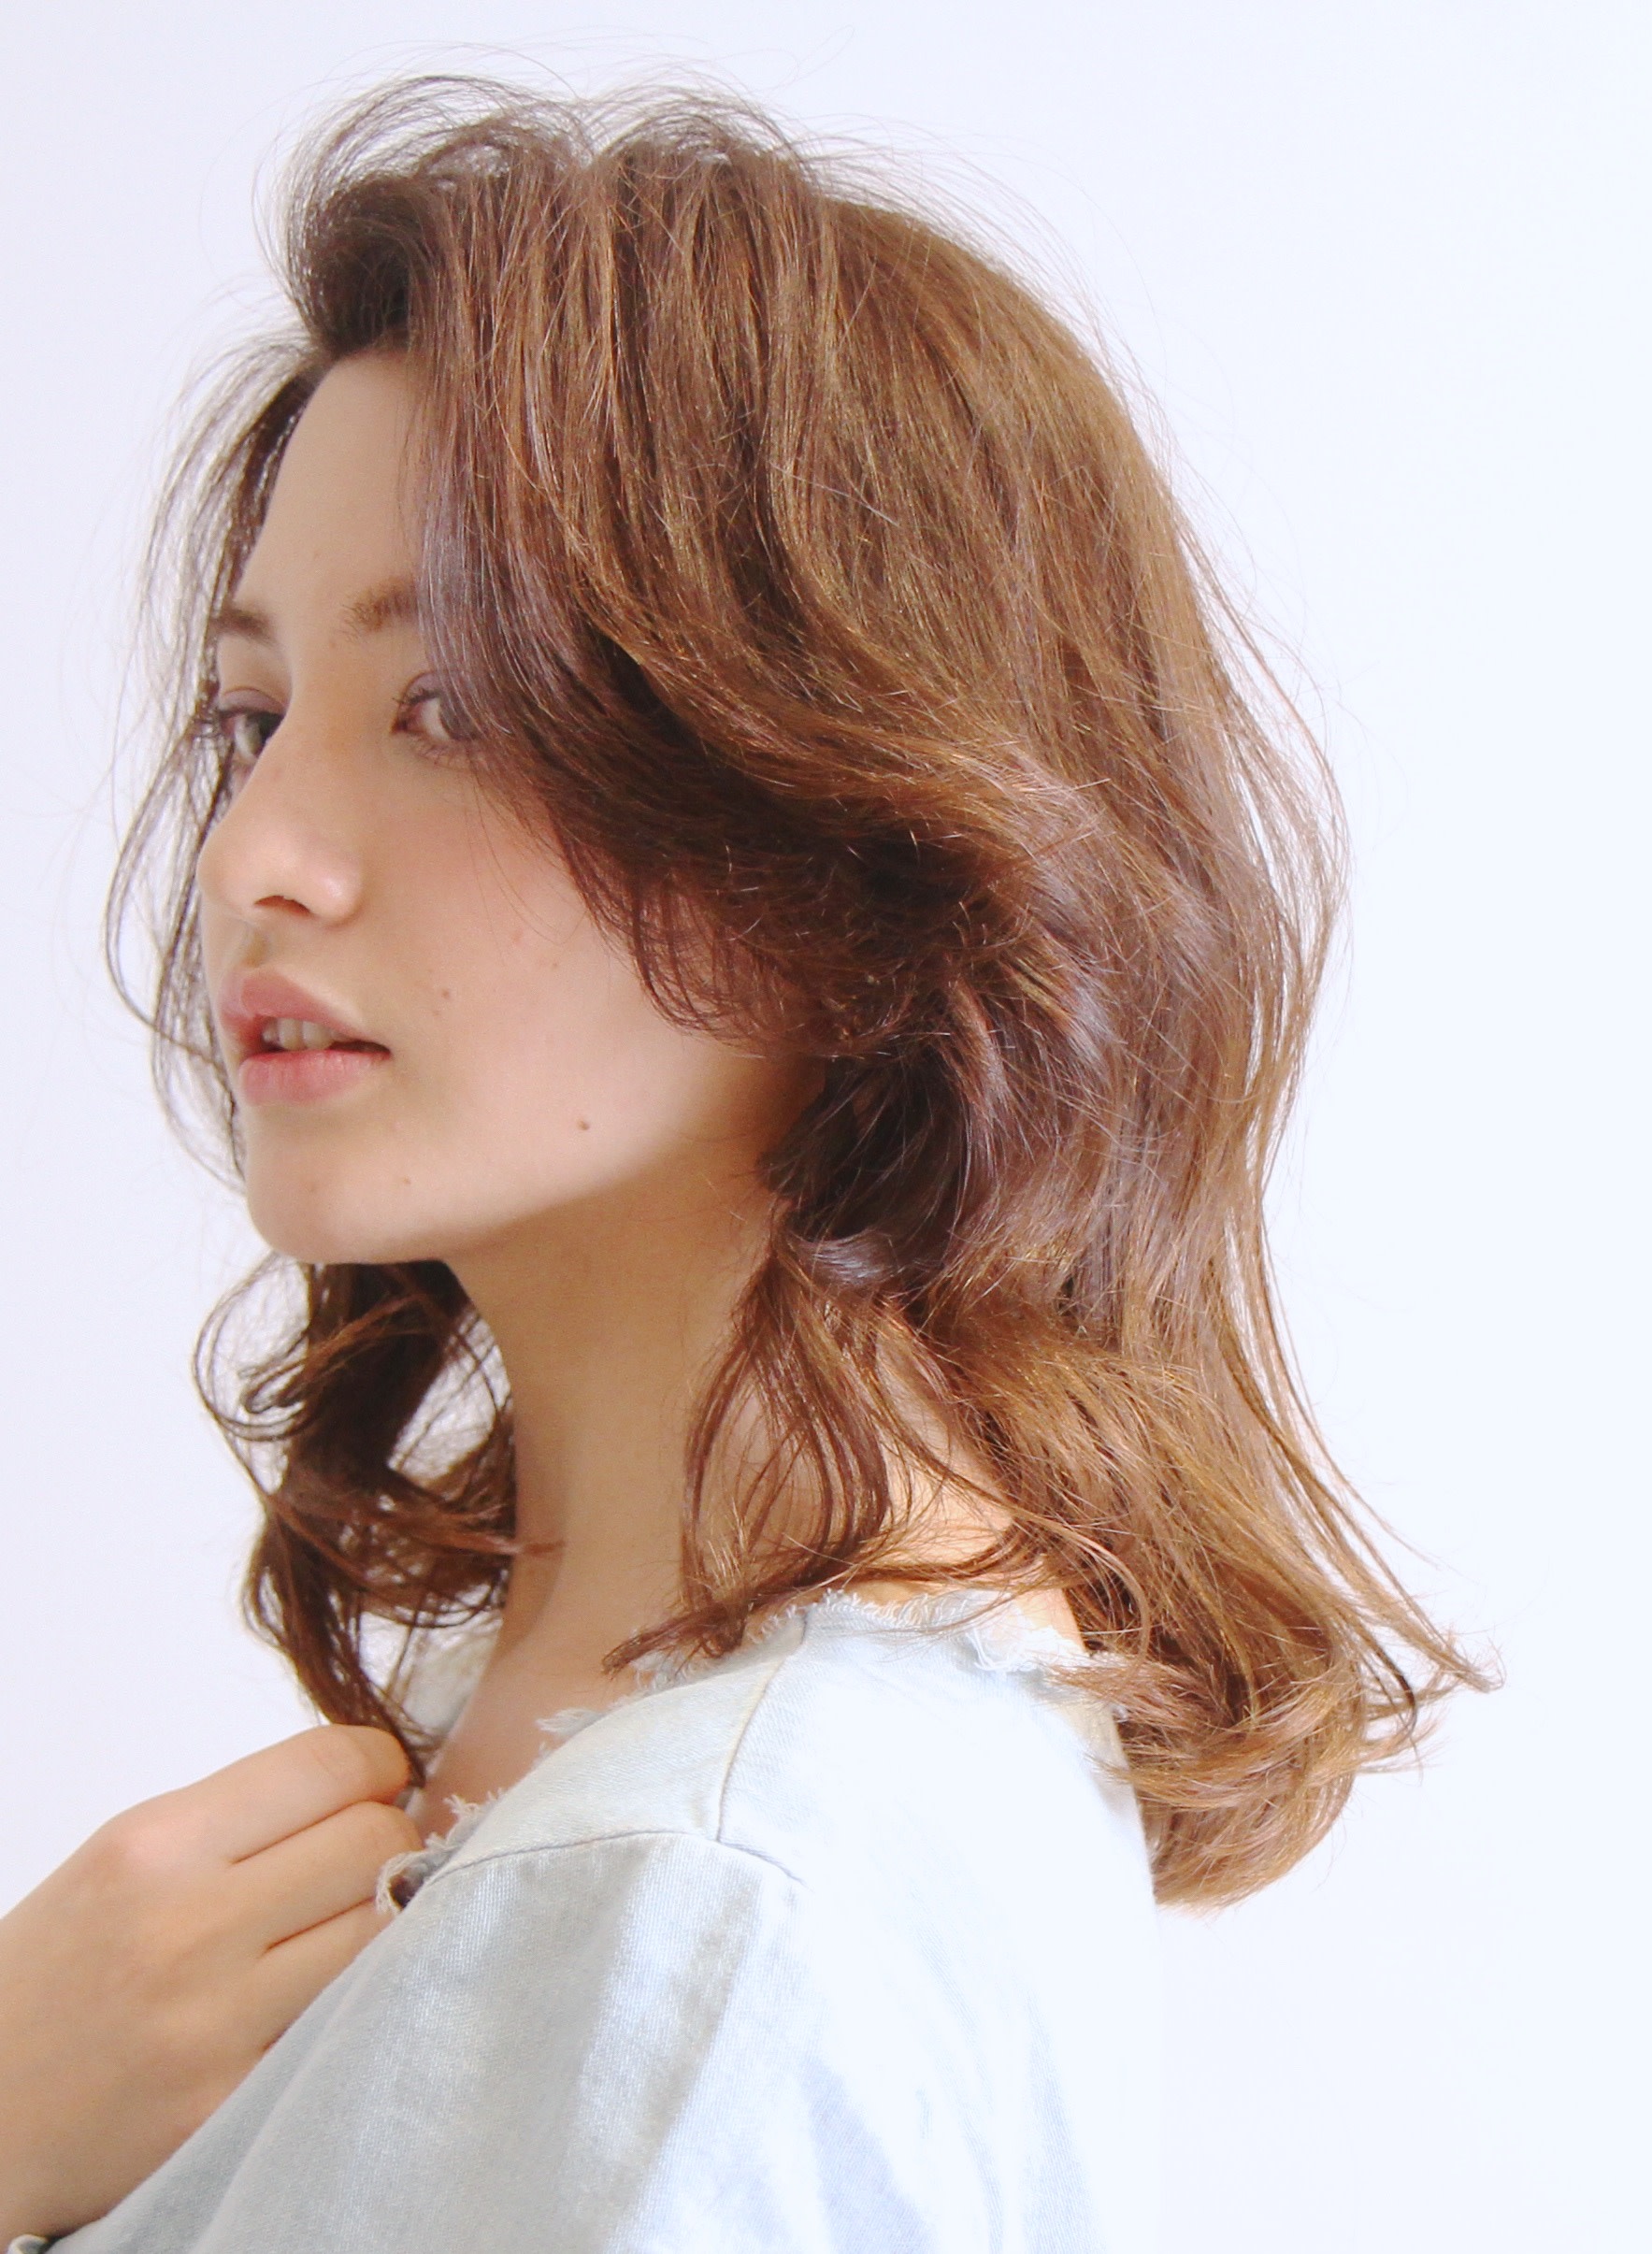 kiyoi hair design【キヨイヘアーデザイン】のスタイル紹介。とにかく楽チン☆大人のエレガントパーマボブ